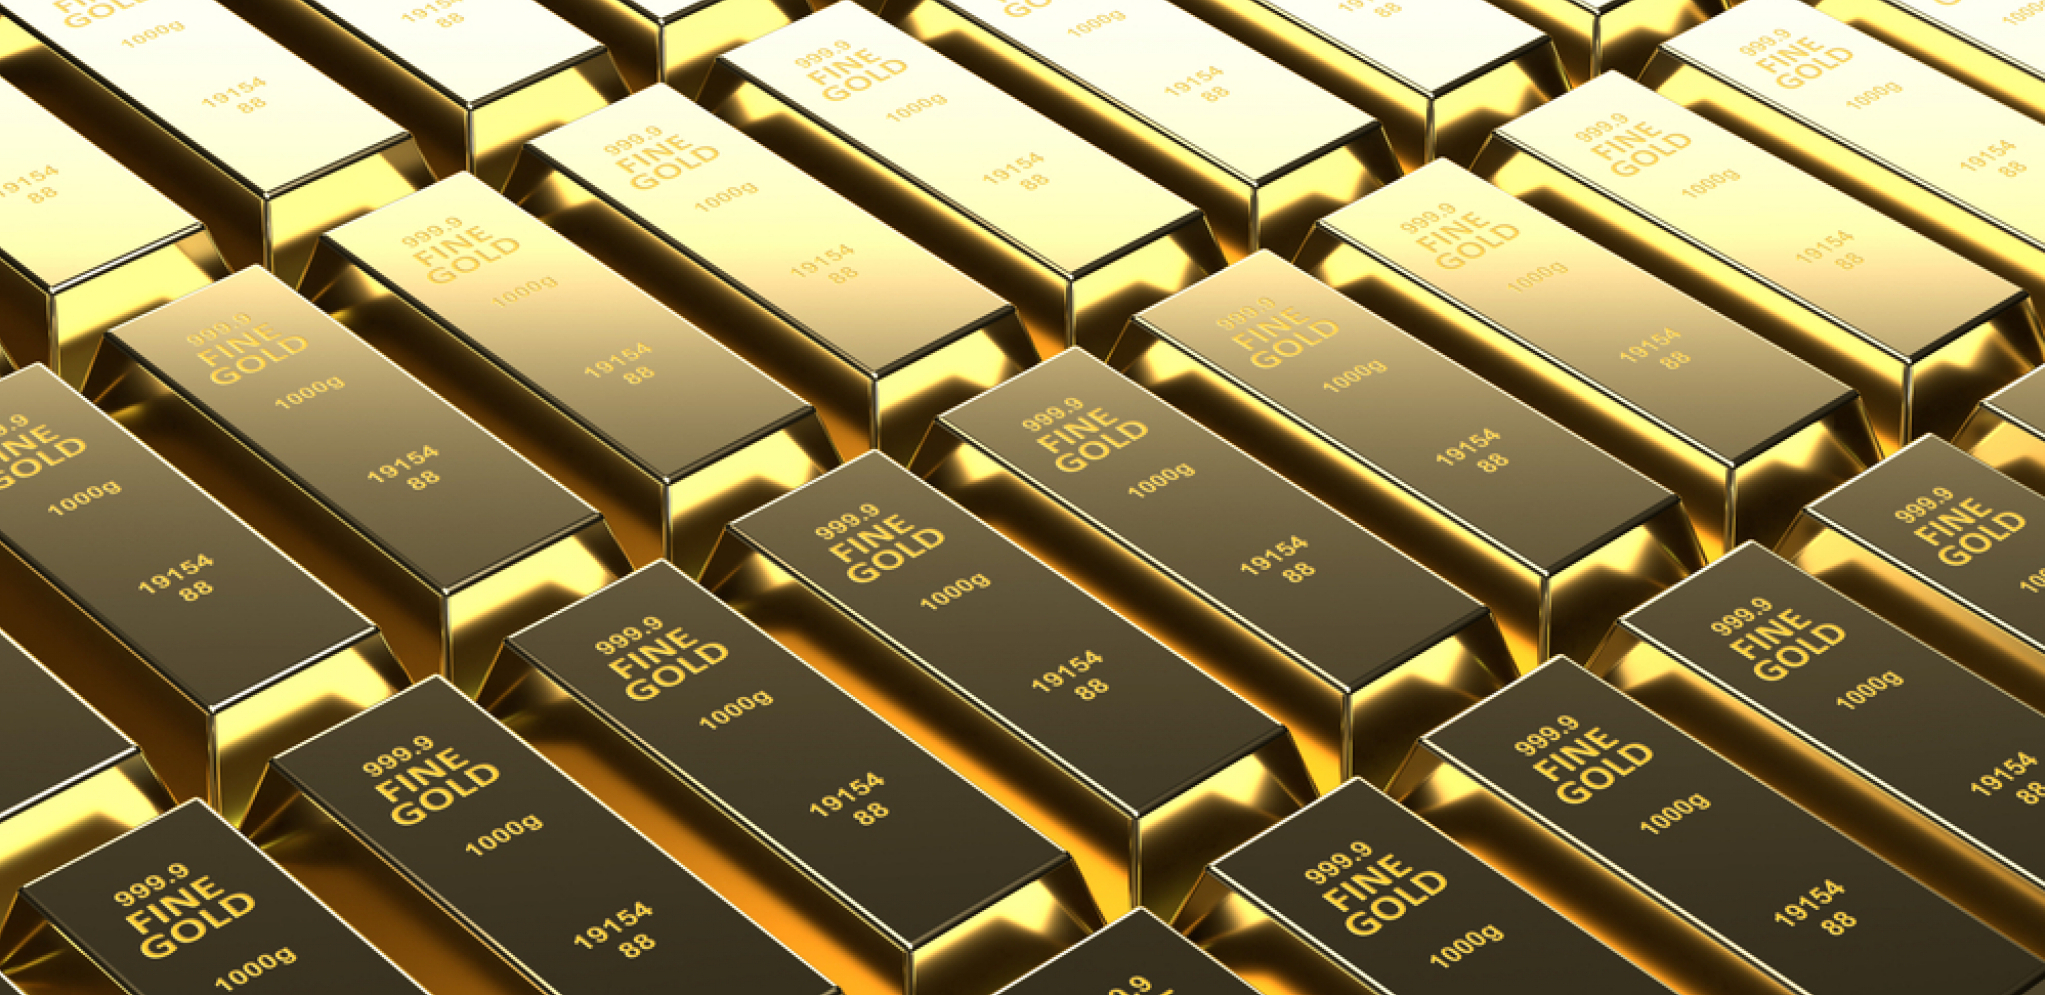 PLEMENITI METALI SVE SKUPOCENIJI Evo koliko iznosi cena zlata za uncu na današnjem trgovanju!